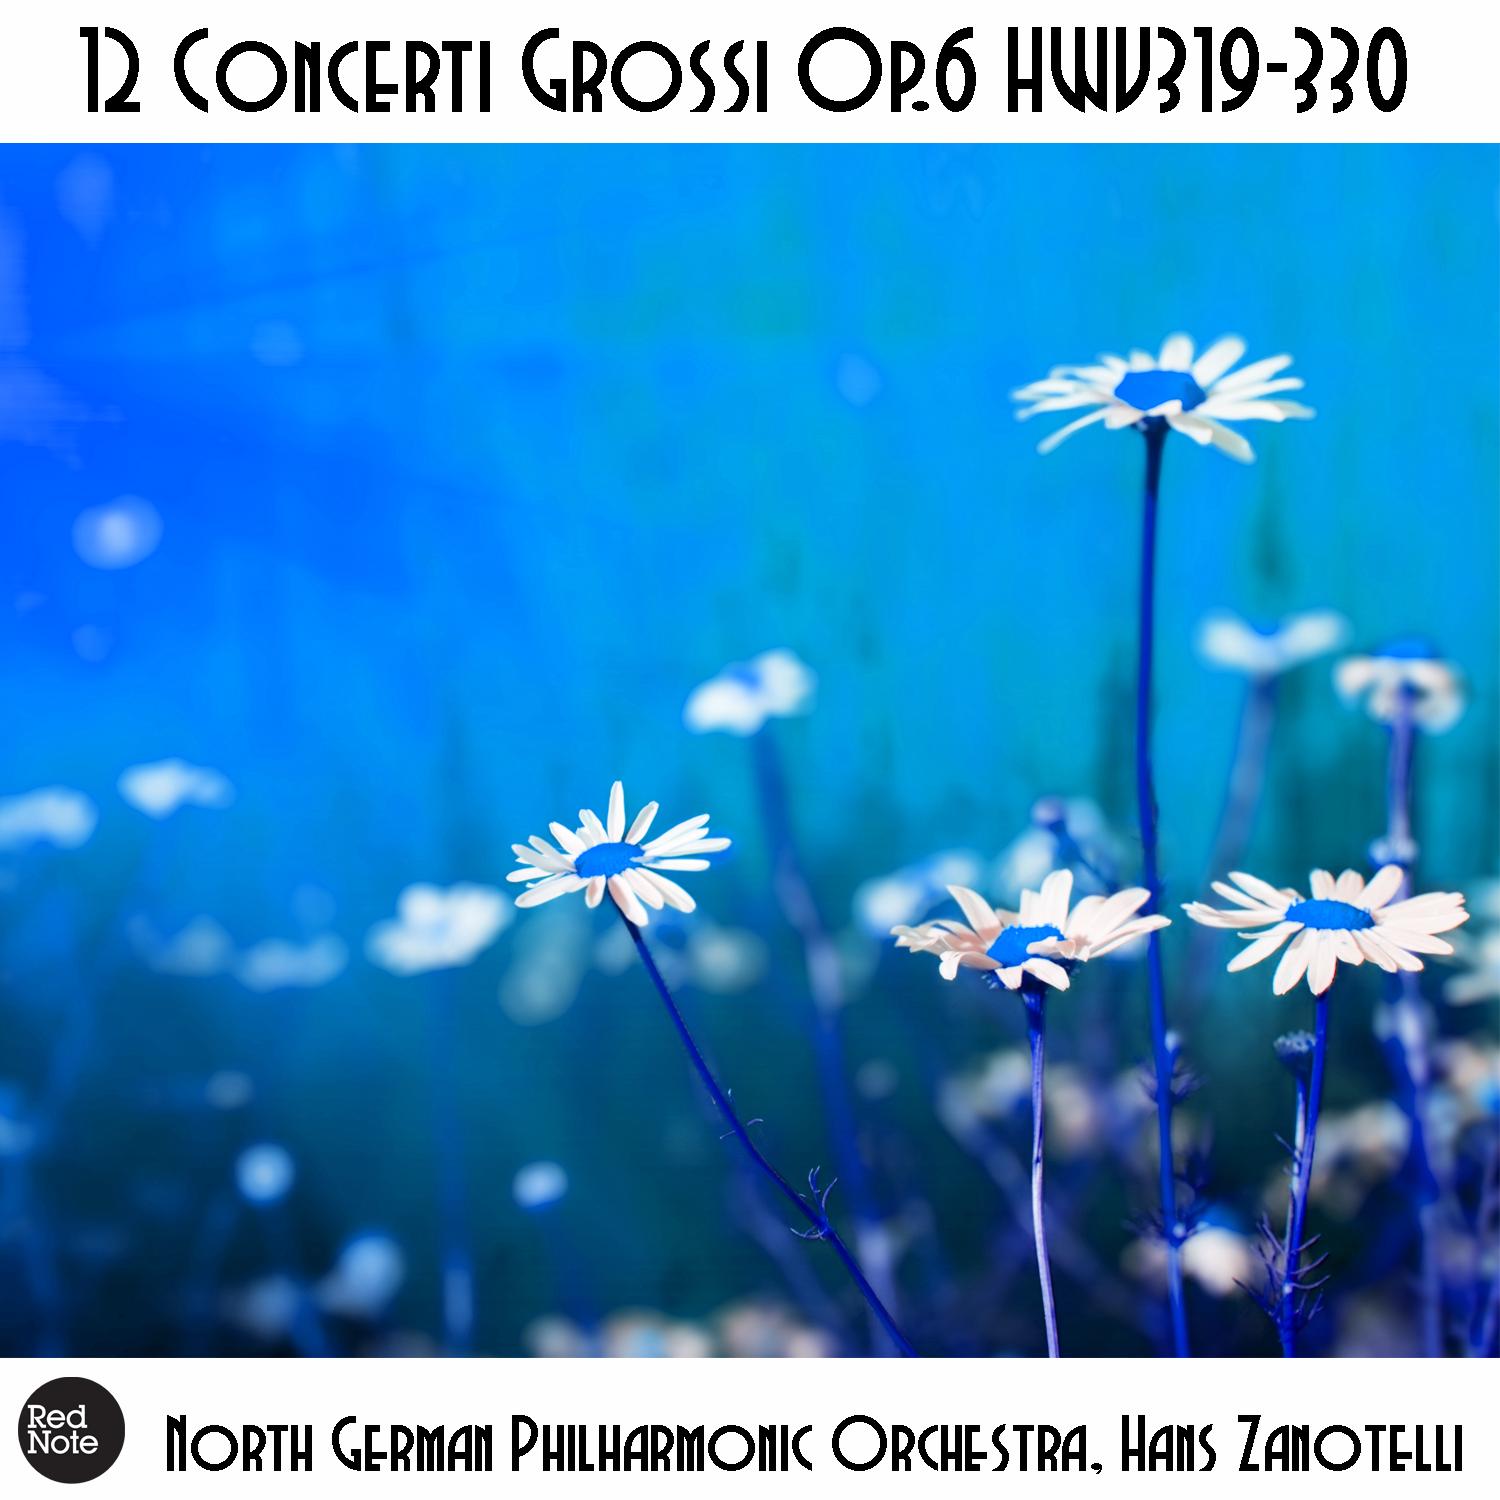 Concerti Grossi No. 6, Op. 6 HWV324: V. Allegro